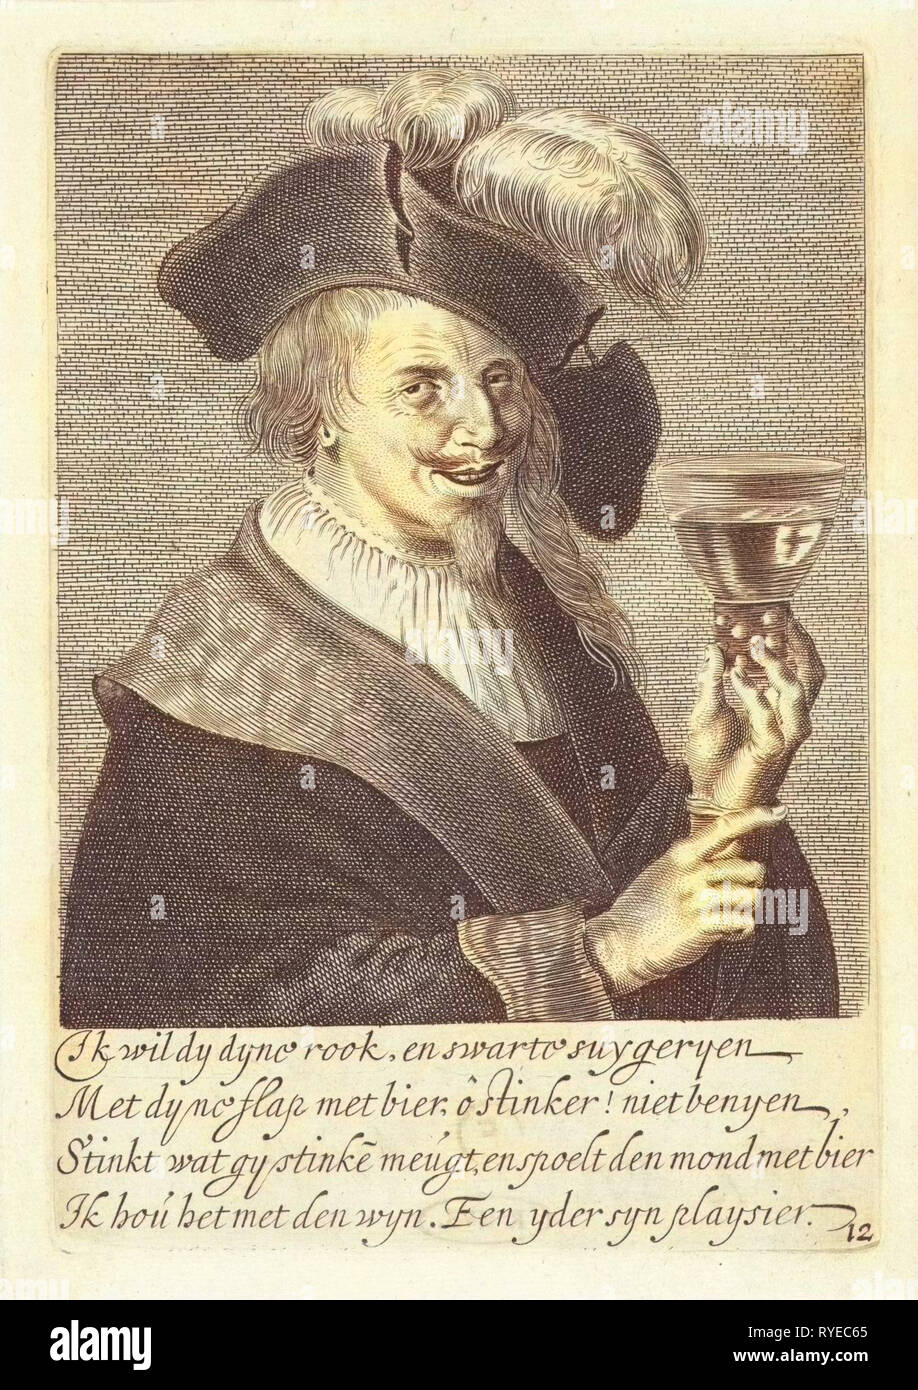 Man with Rummer, Jan van de Velde (II), 1633 Stock Photo